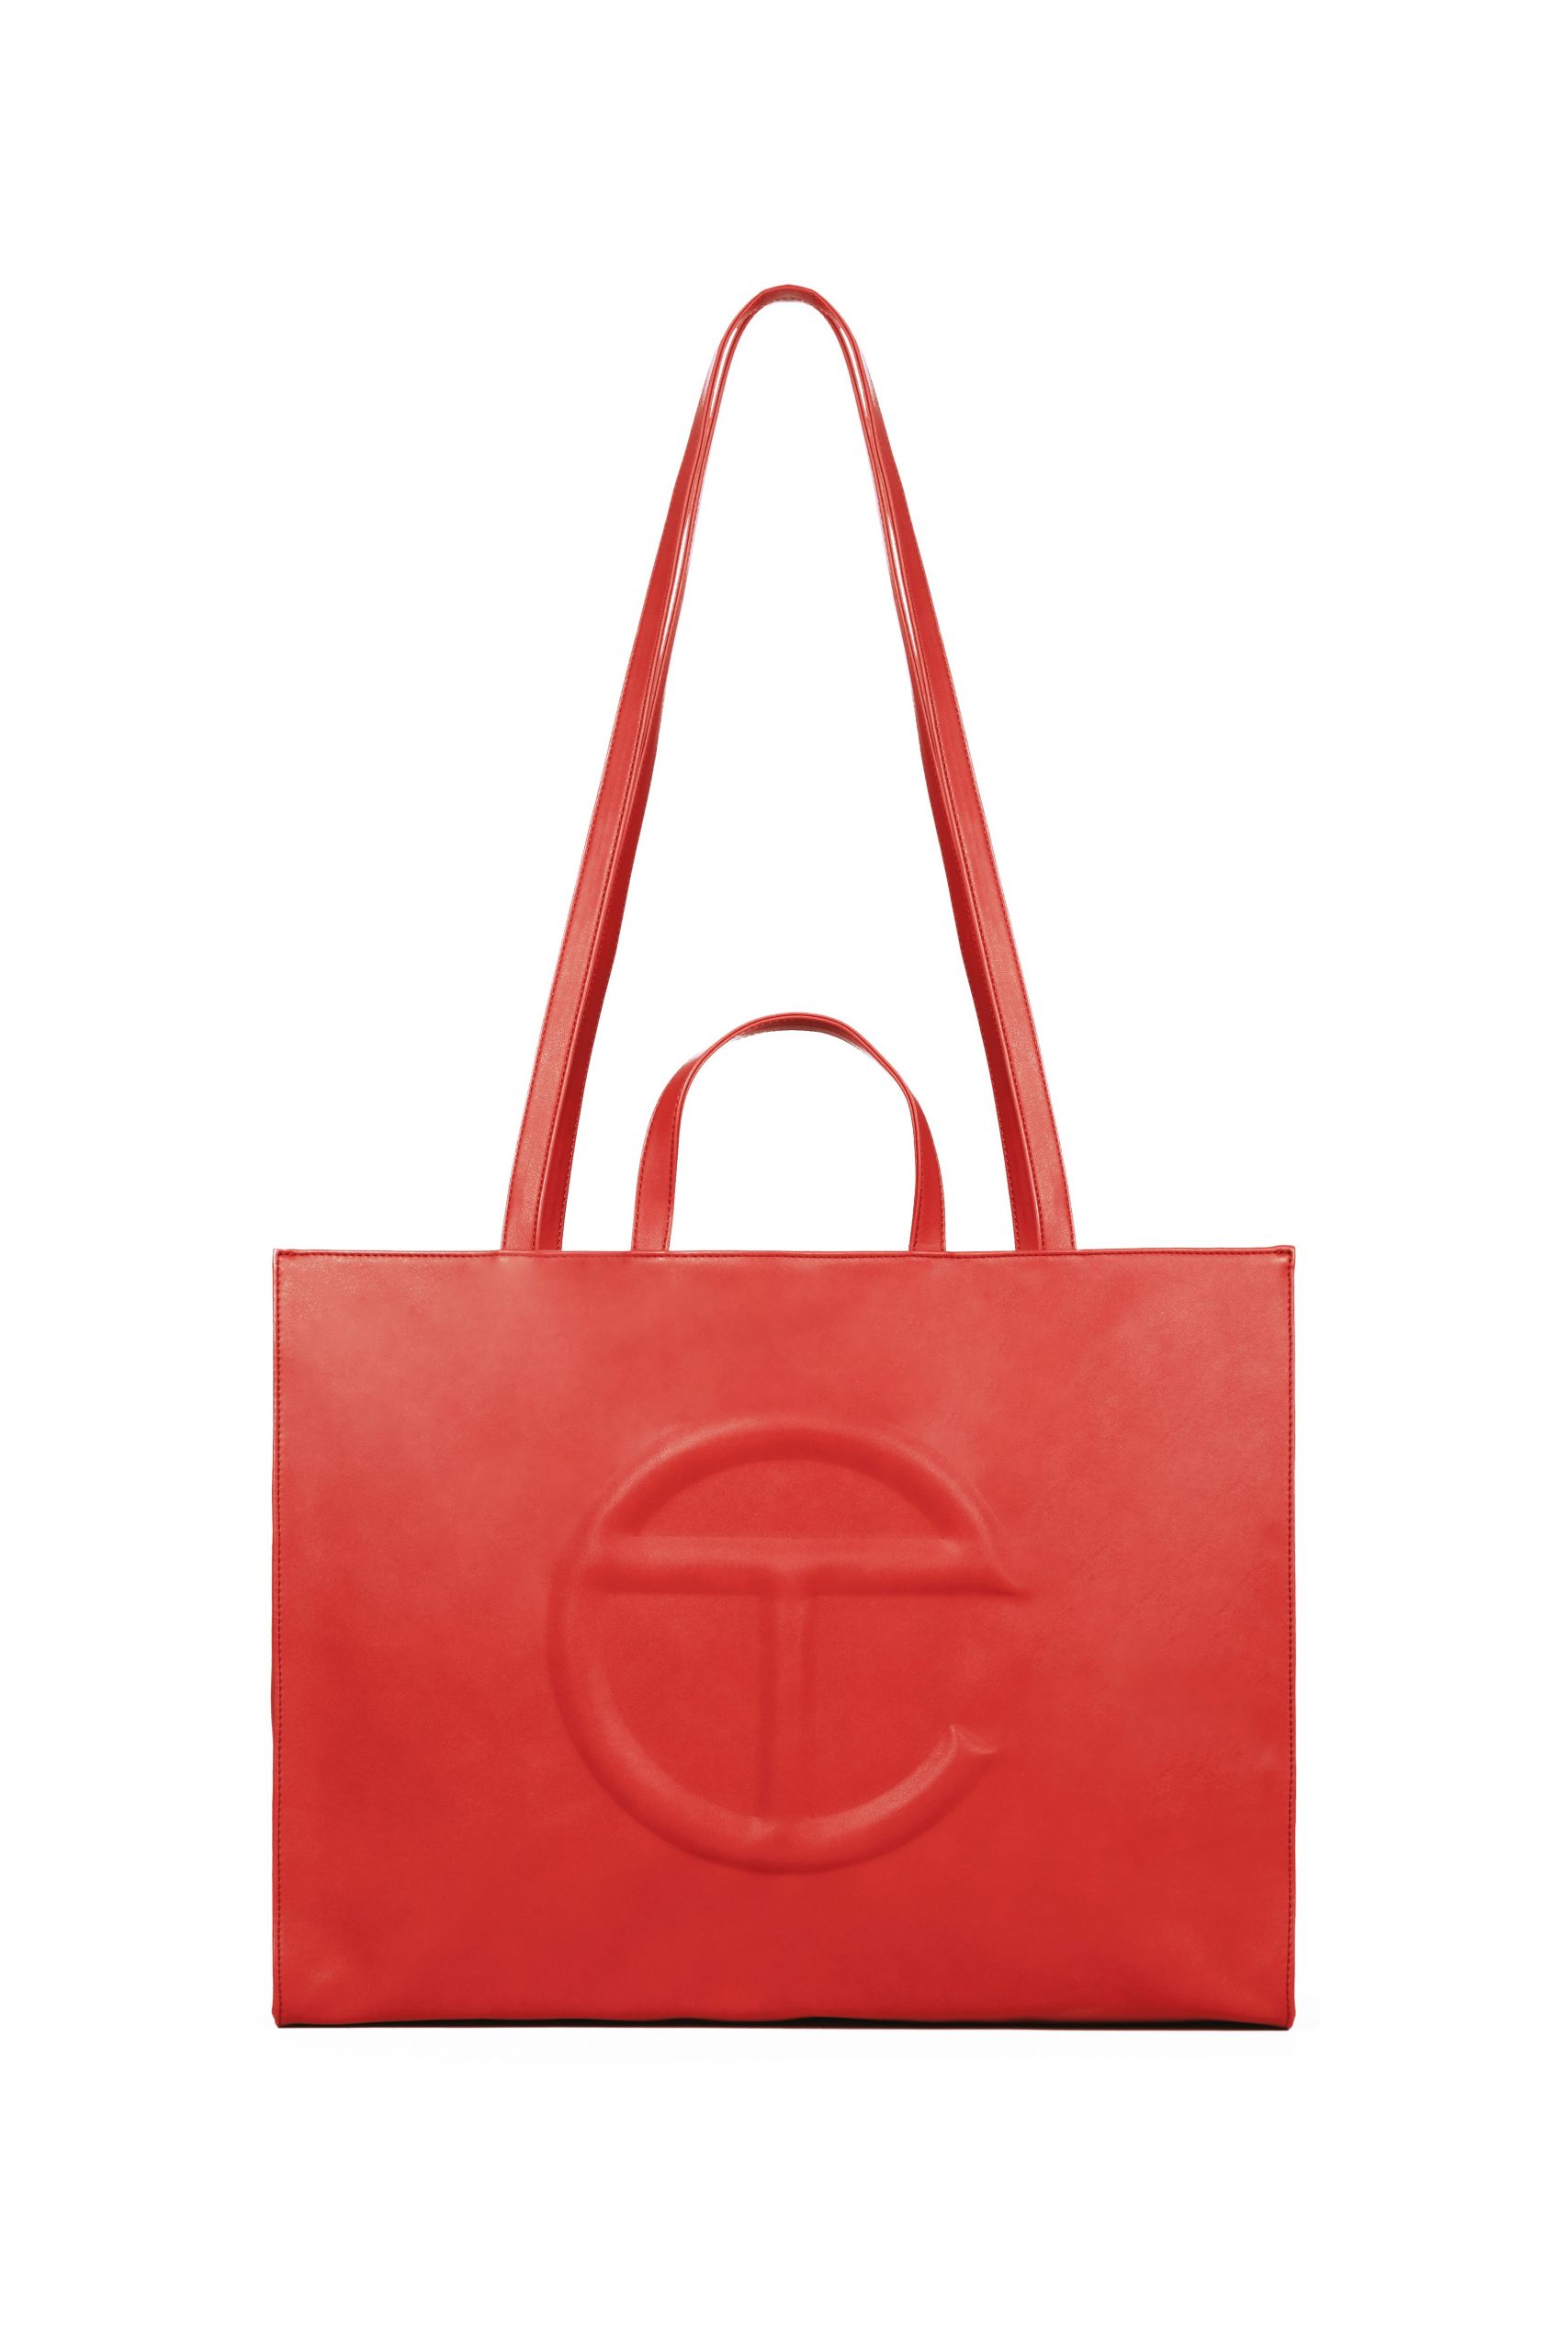 Large Red Shopping Bag